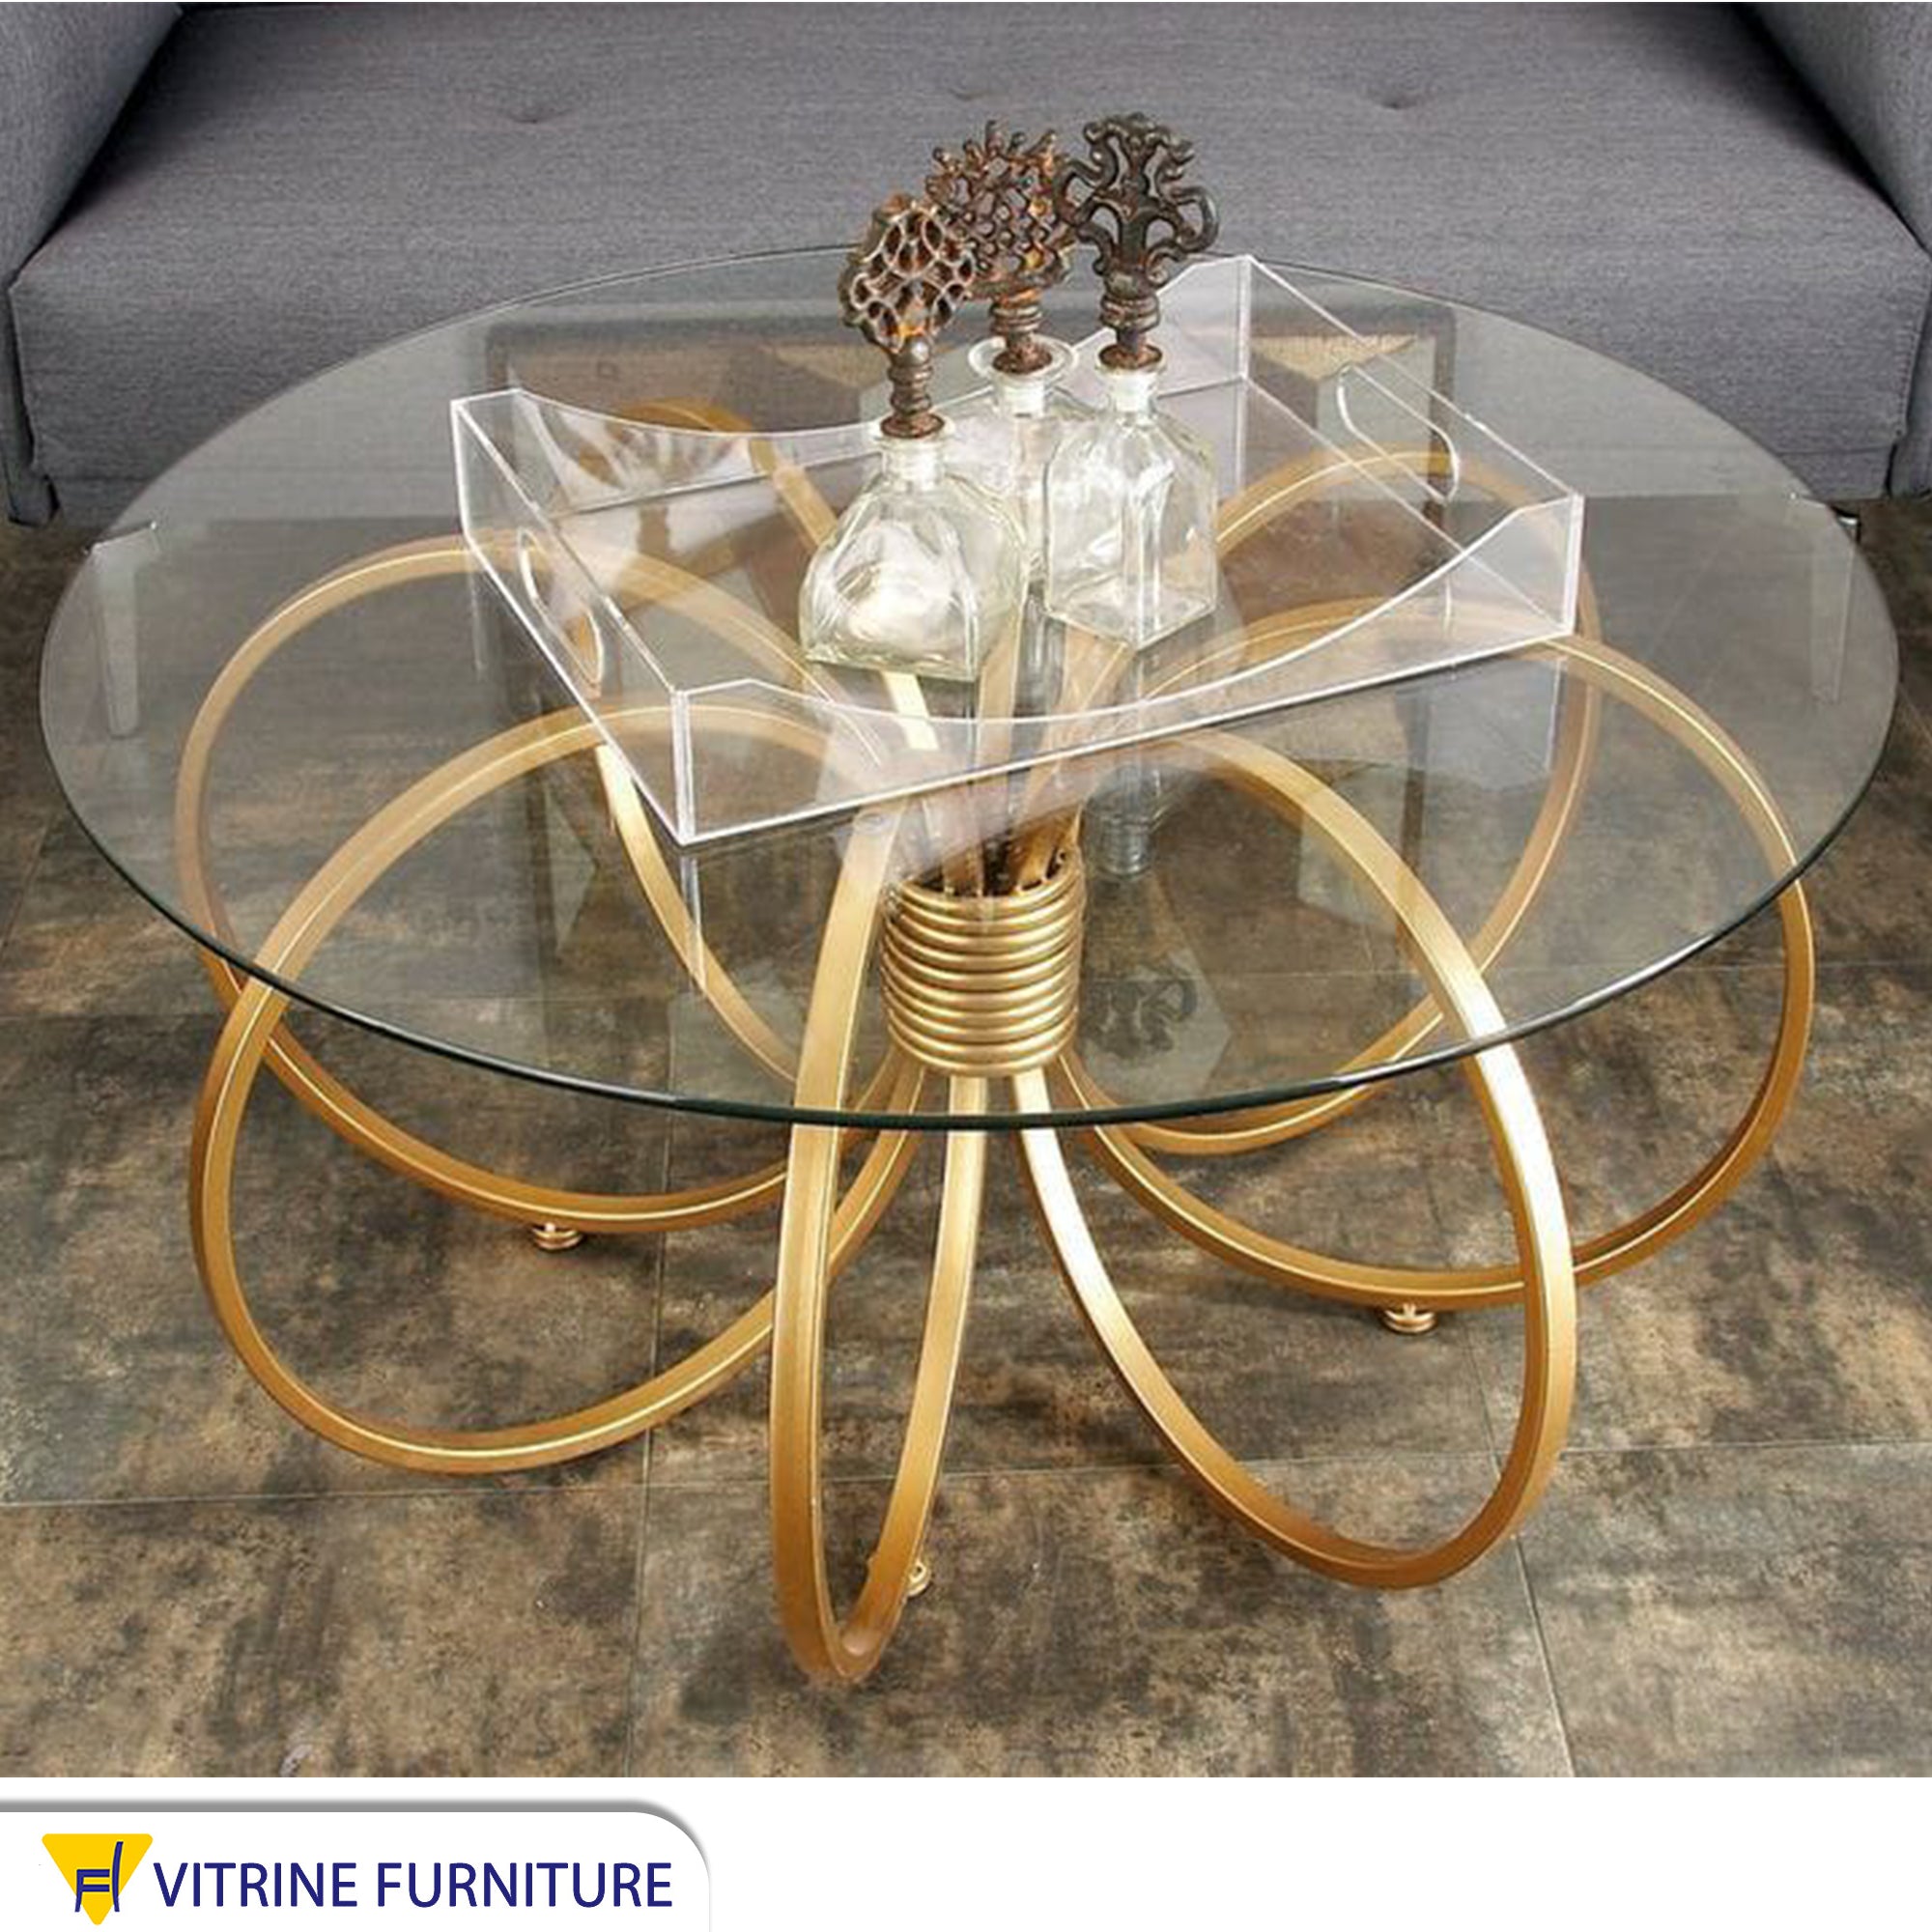 A circular table with a unique design